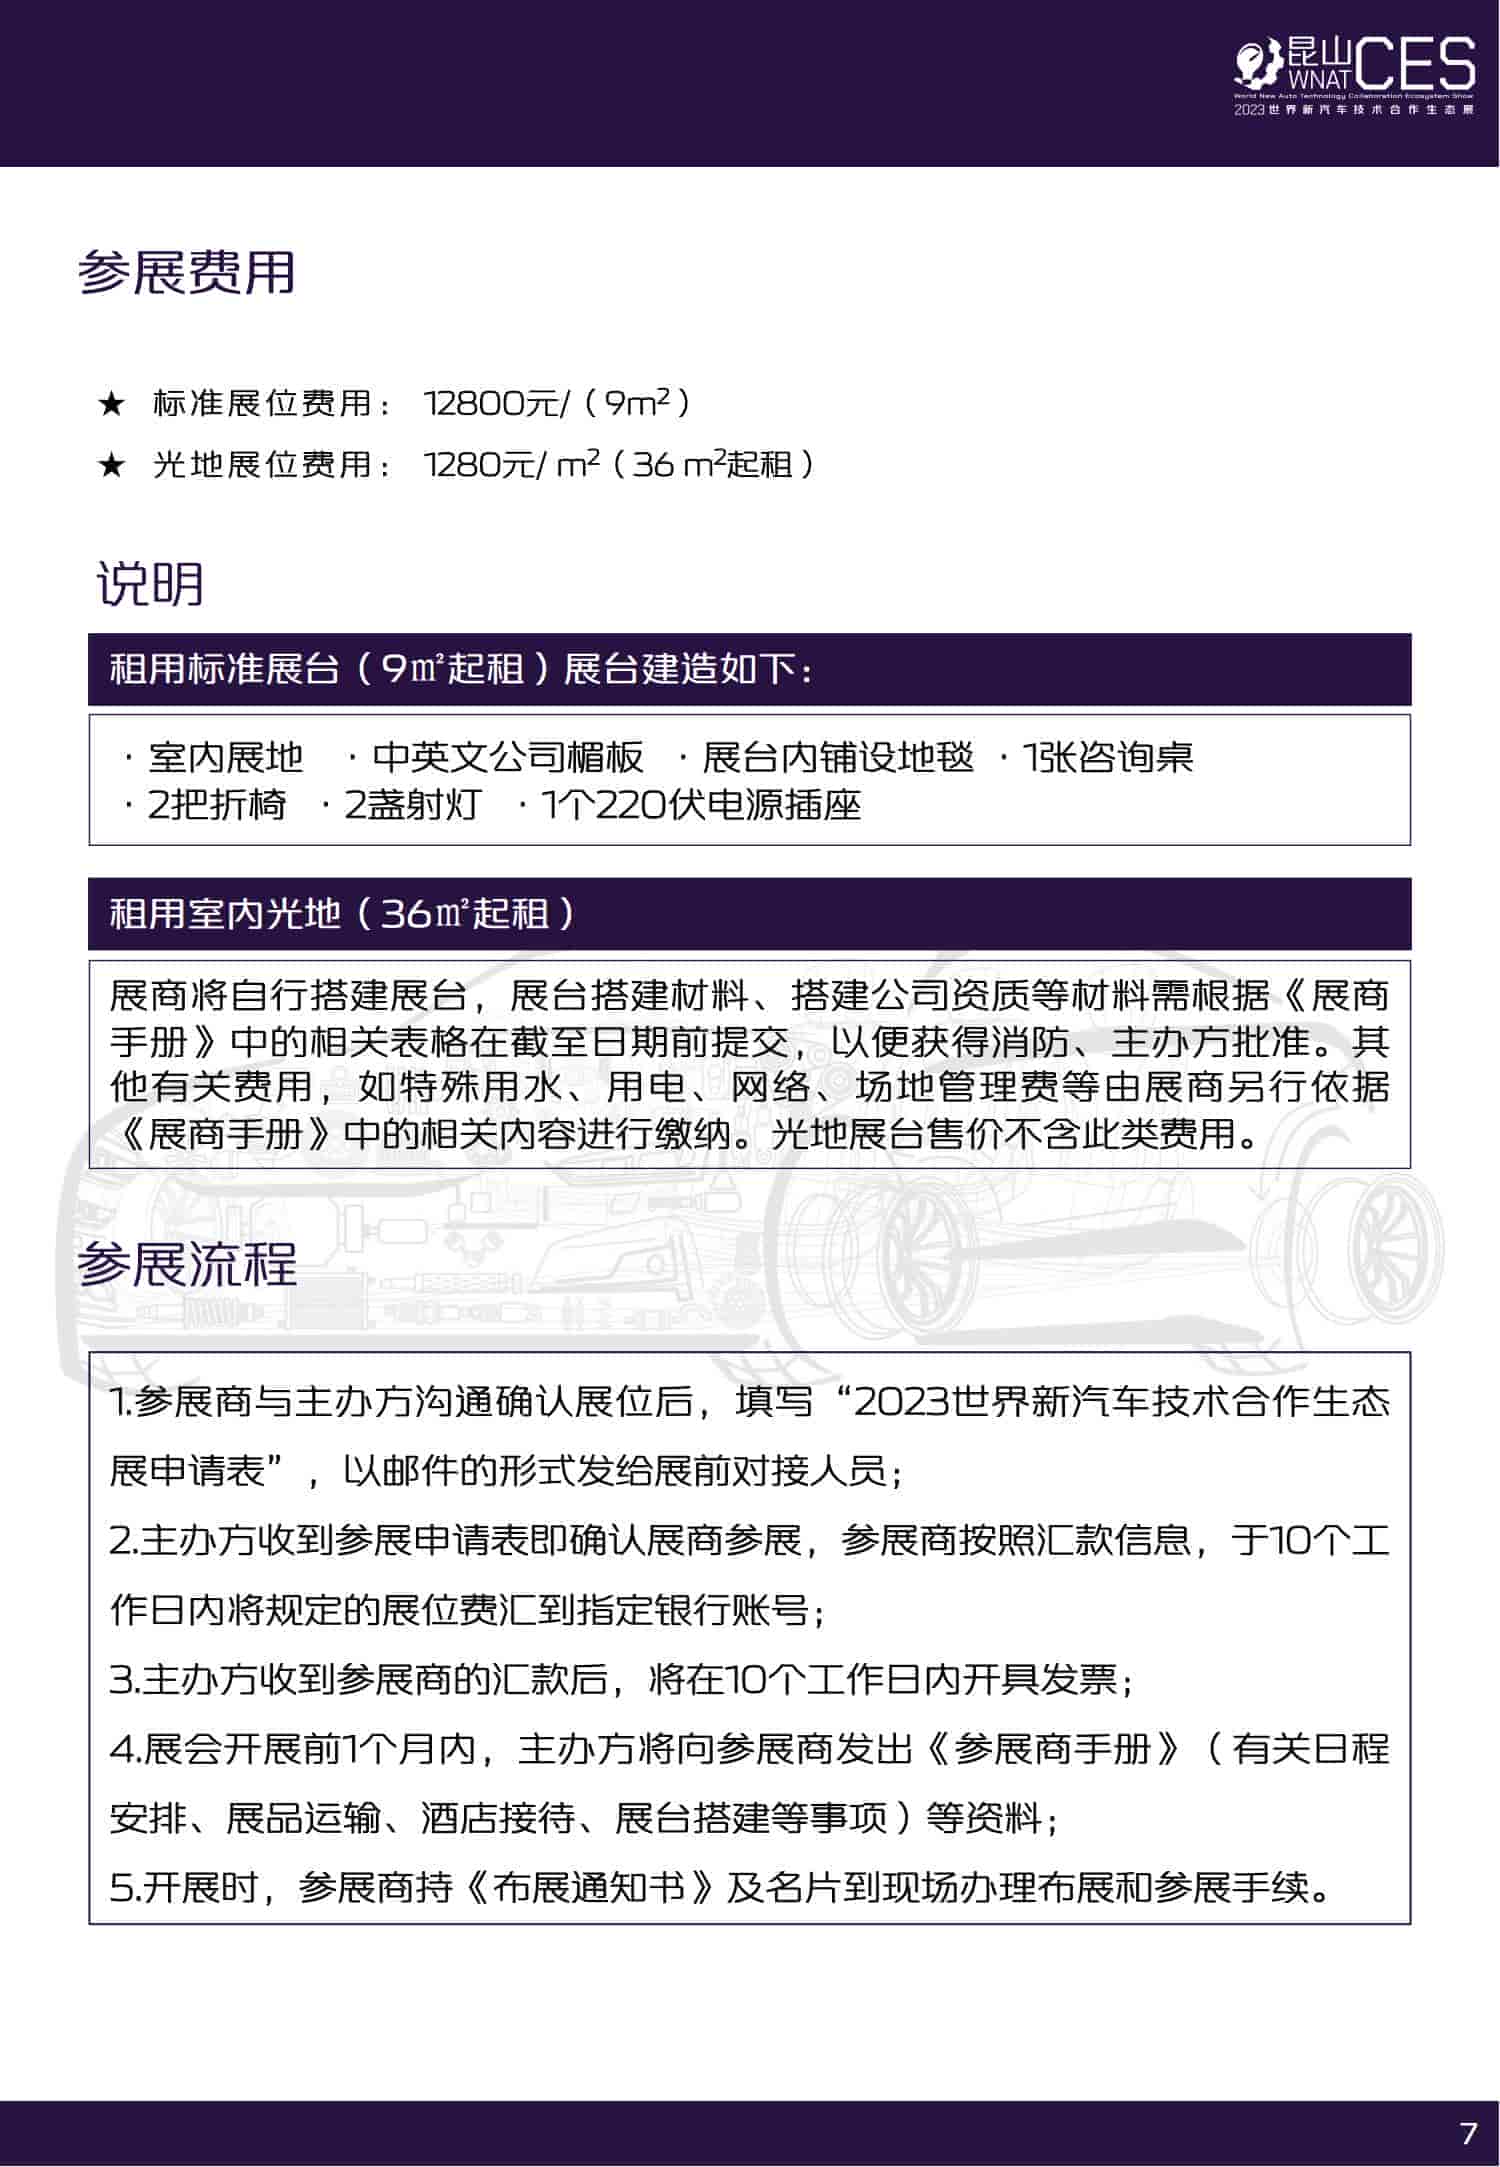 招商手册-2023世界新汽车技术合作生态展_07.jpg